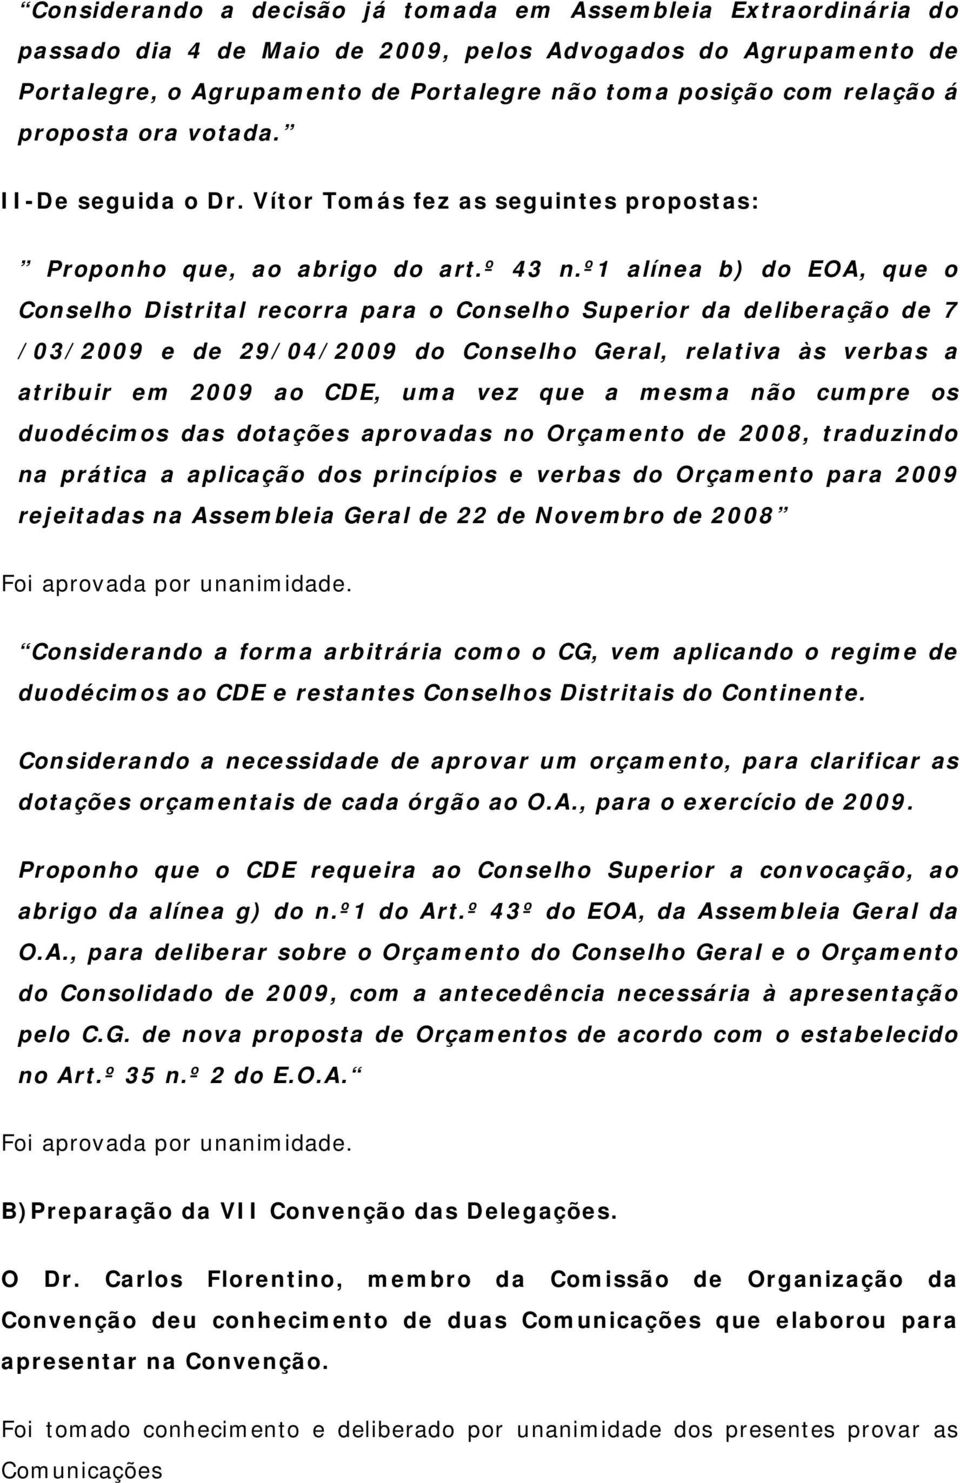 º1 alínea b) do EOA, que o Conselho Distrital recorra para o Conselho Superior da deliberação de 7 /03/2009 e de 29/04/2009 do Conselho Geral, relativa às verbas a atribuir em 2009 ao CDE, uma vez